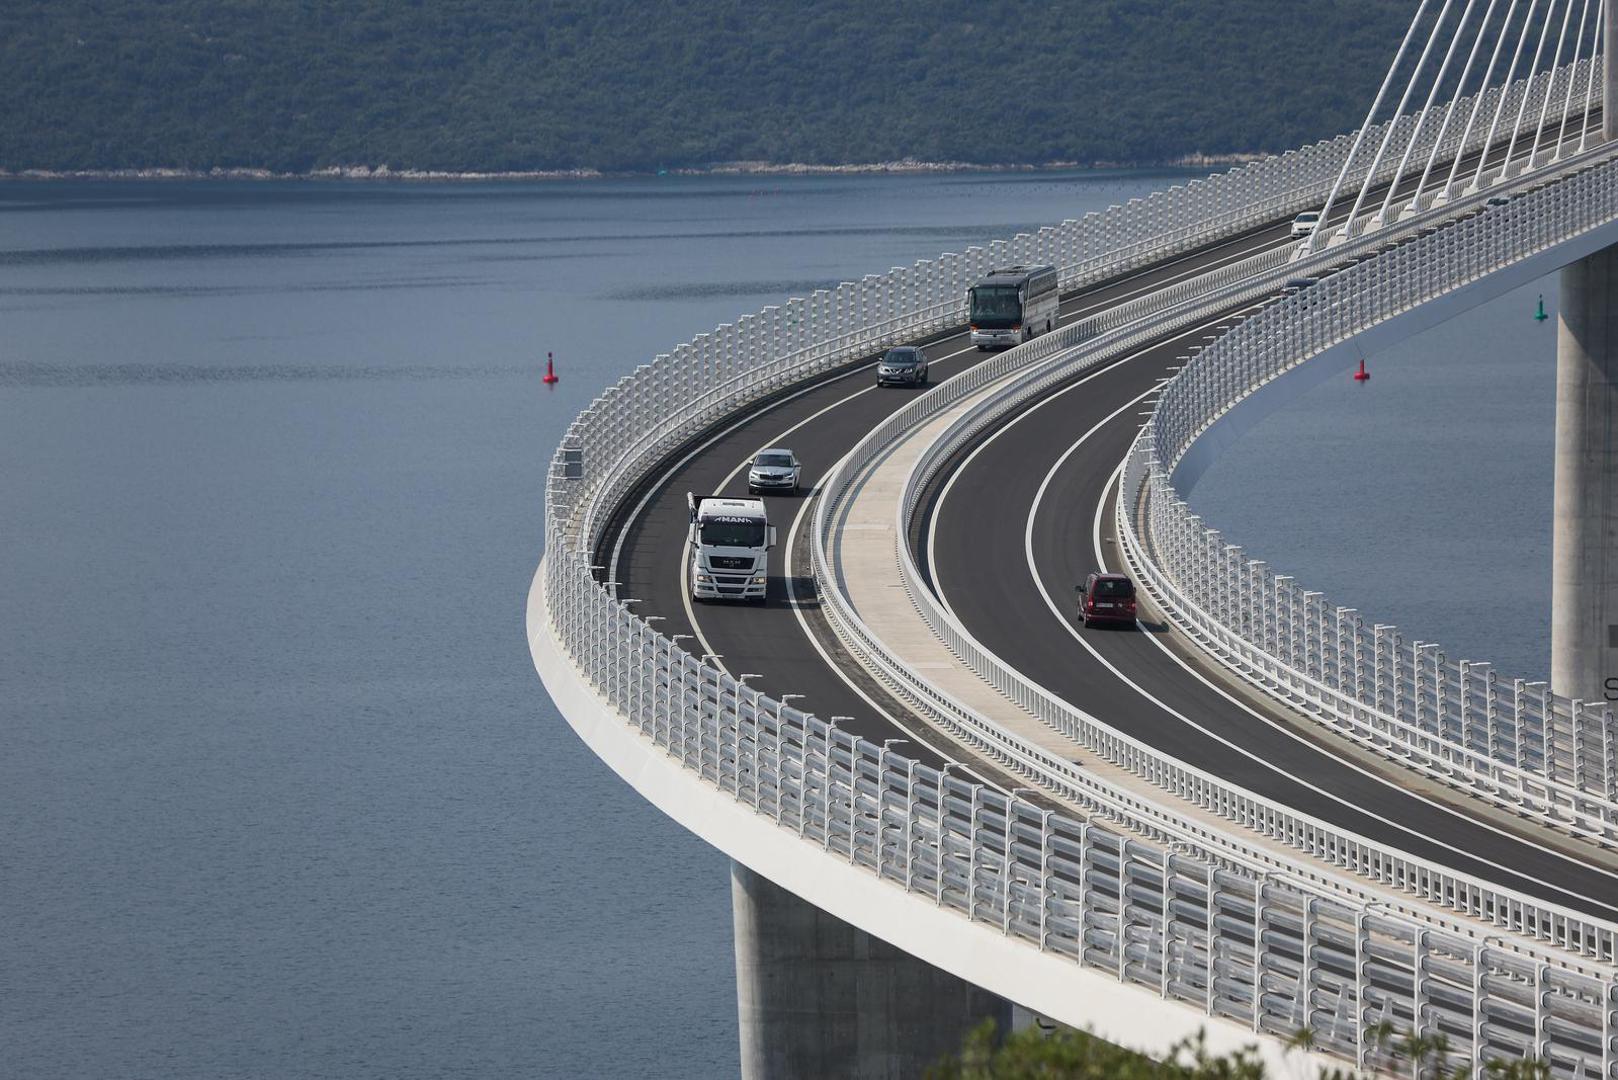 Hrvatske ceste su dobitnici godišnje nagrade 2023. za most Pelješac u kategoriji za izvanredno inženjersko postignuće koje obuhvaća estetski ugodnu i ekološki prihvatljivu praksu u mostogradnji.